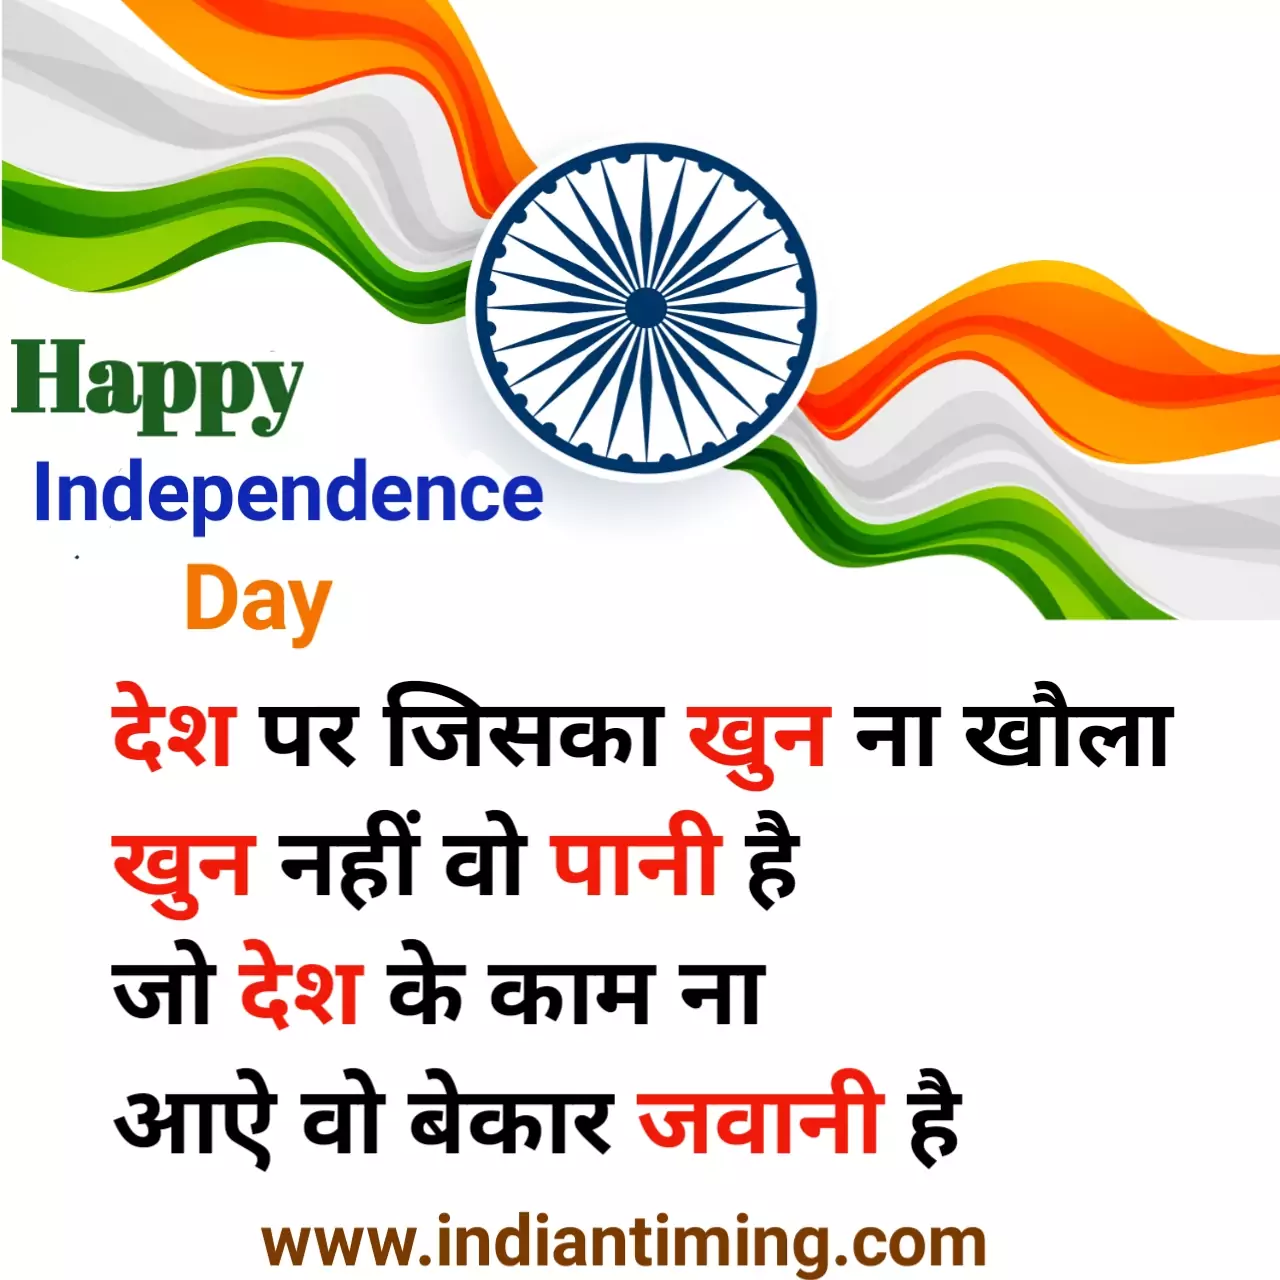 Independence Day Shayari in Hindi 2020